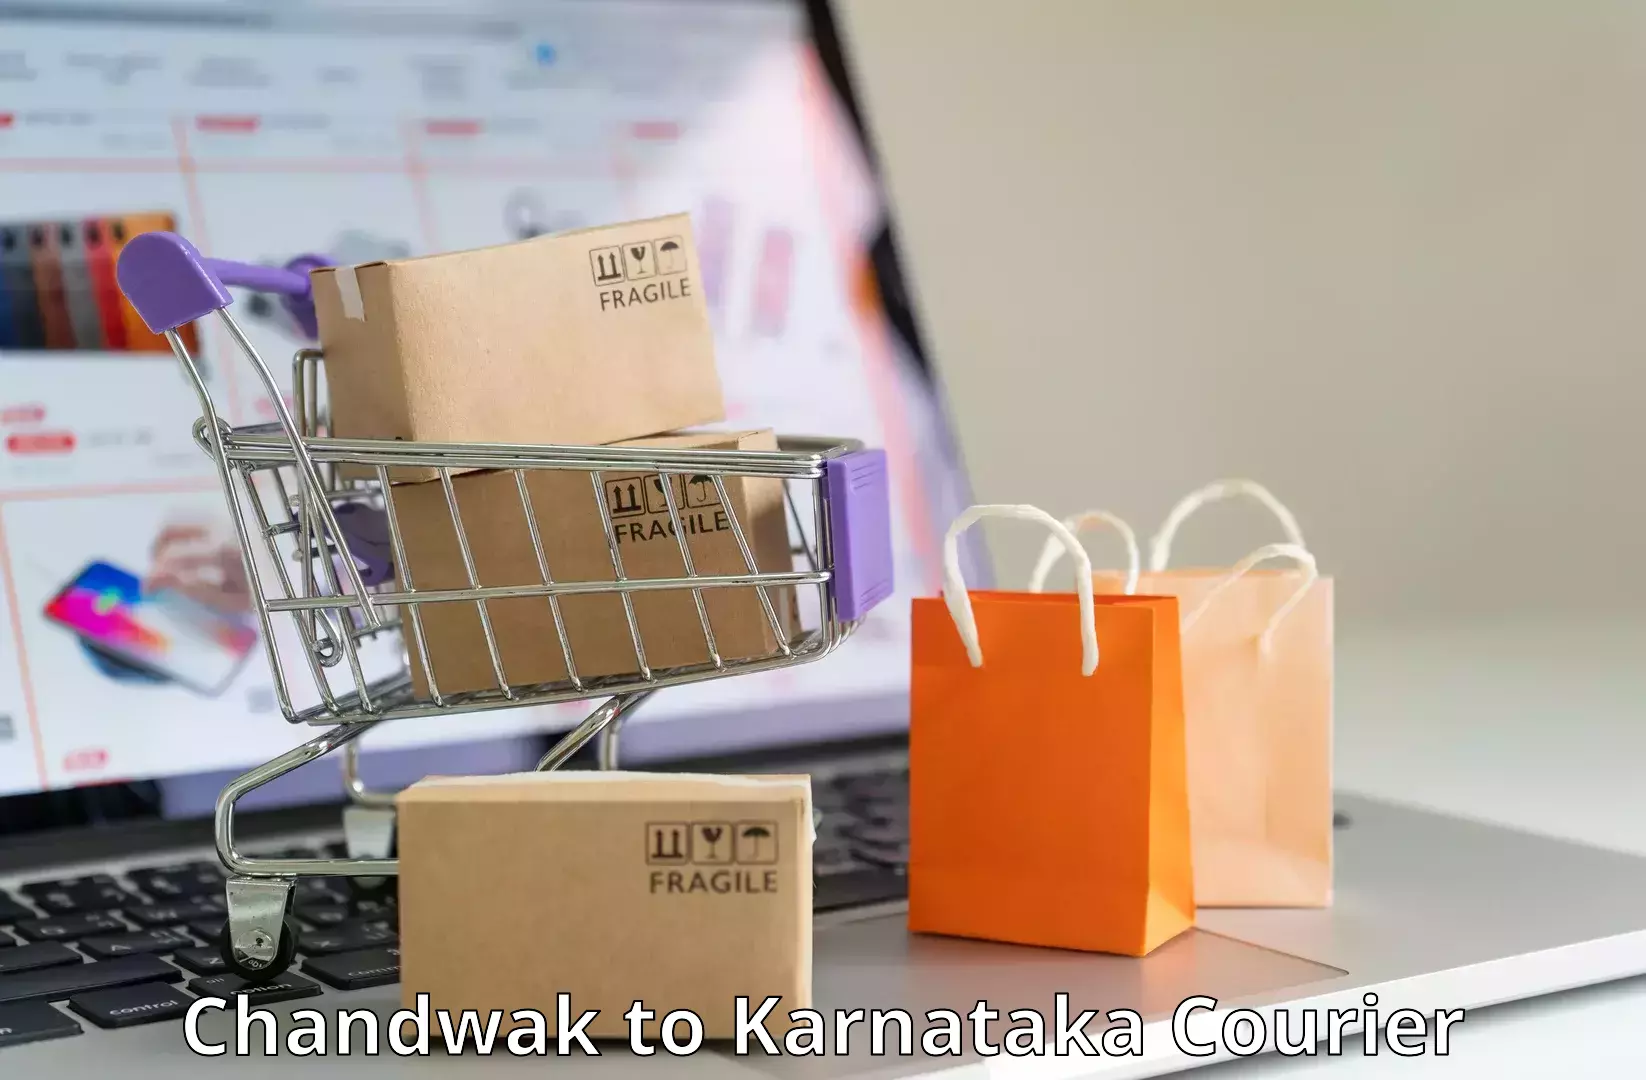 Online package tracking Chandwak to Sindagi